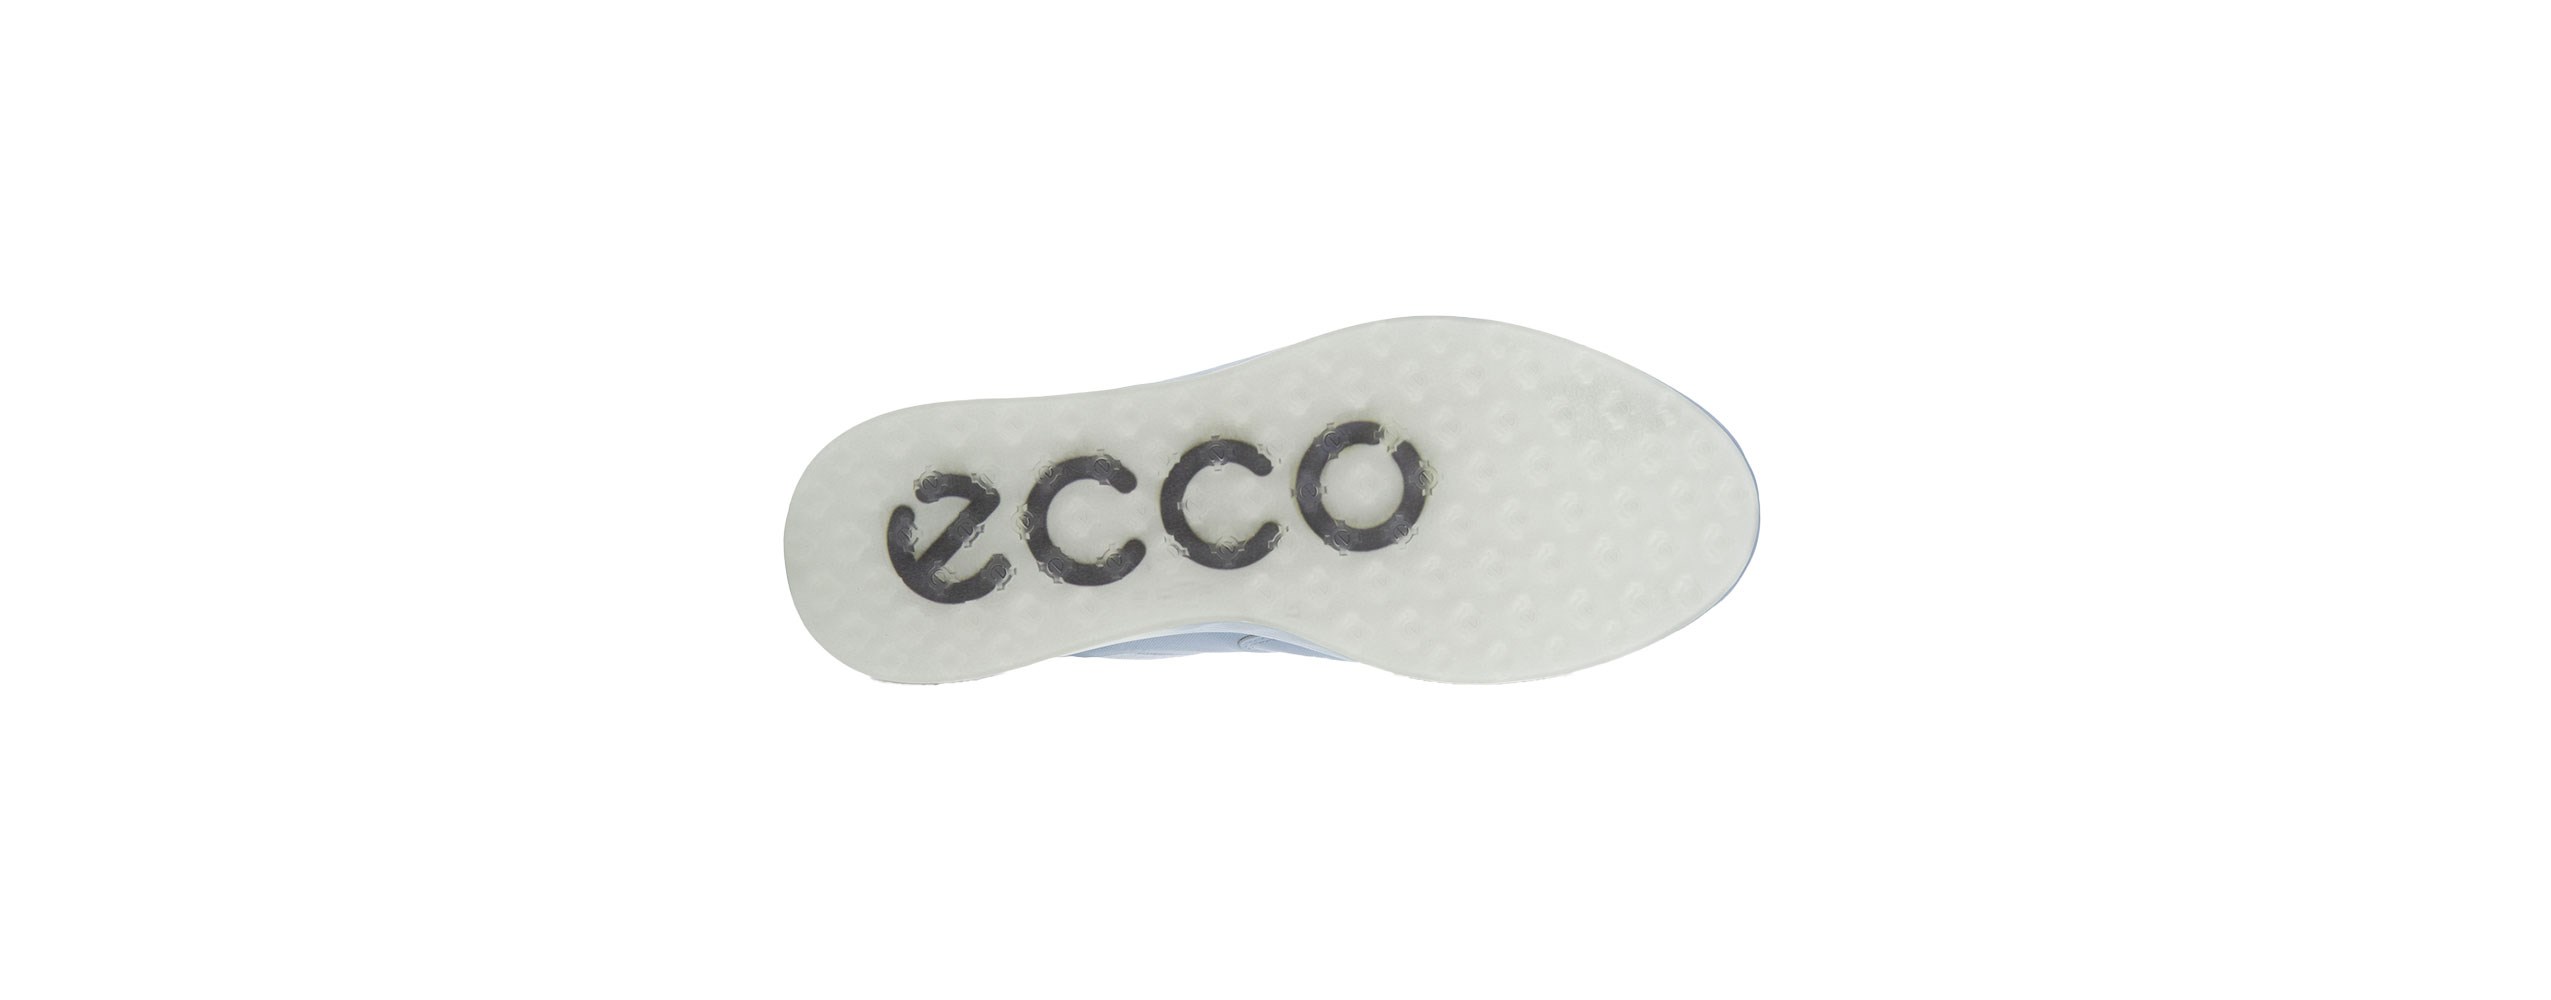 ECCO Golf S-THREE BOA DUSTY BLUE/AIR dámské golfové boty, velikost - 37, 38, 39, 40, 41 - zvìtšit obrázek